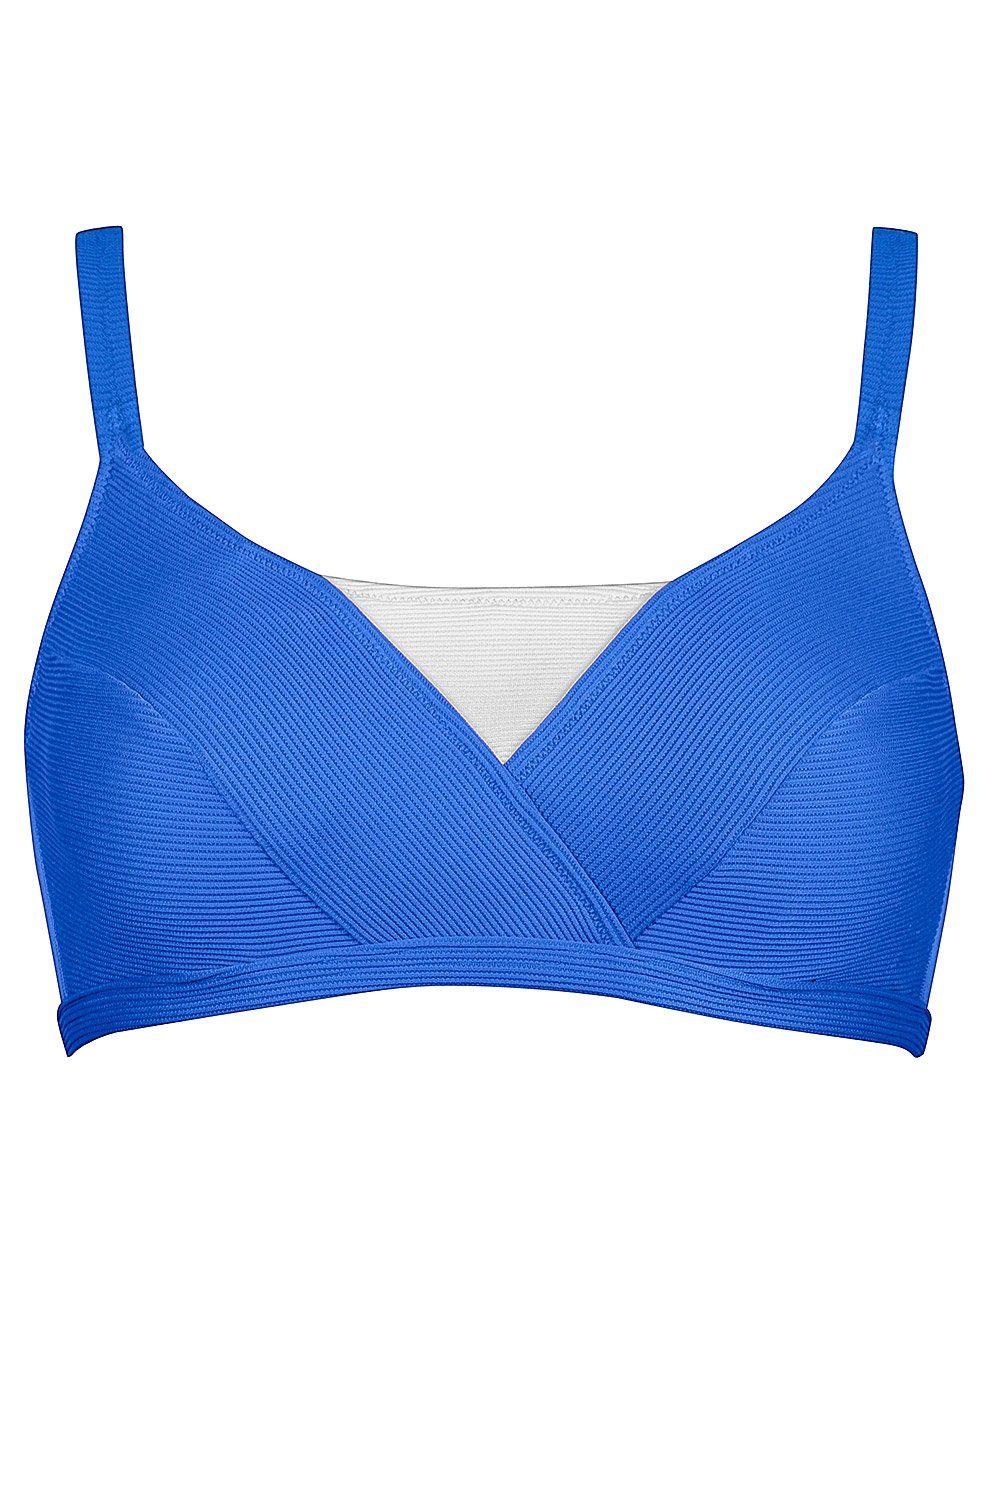 Lidea Bustier-Bikini-Top »Contrast«, mit Bügel Mix&Match Extra Support Cup  D E F online kaufen | OTTO